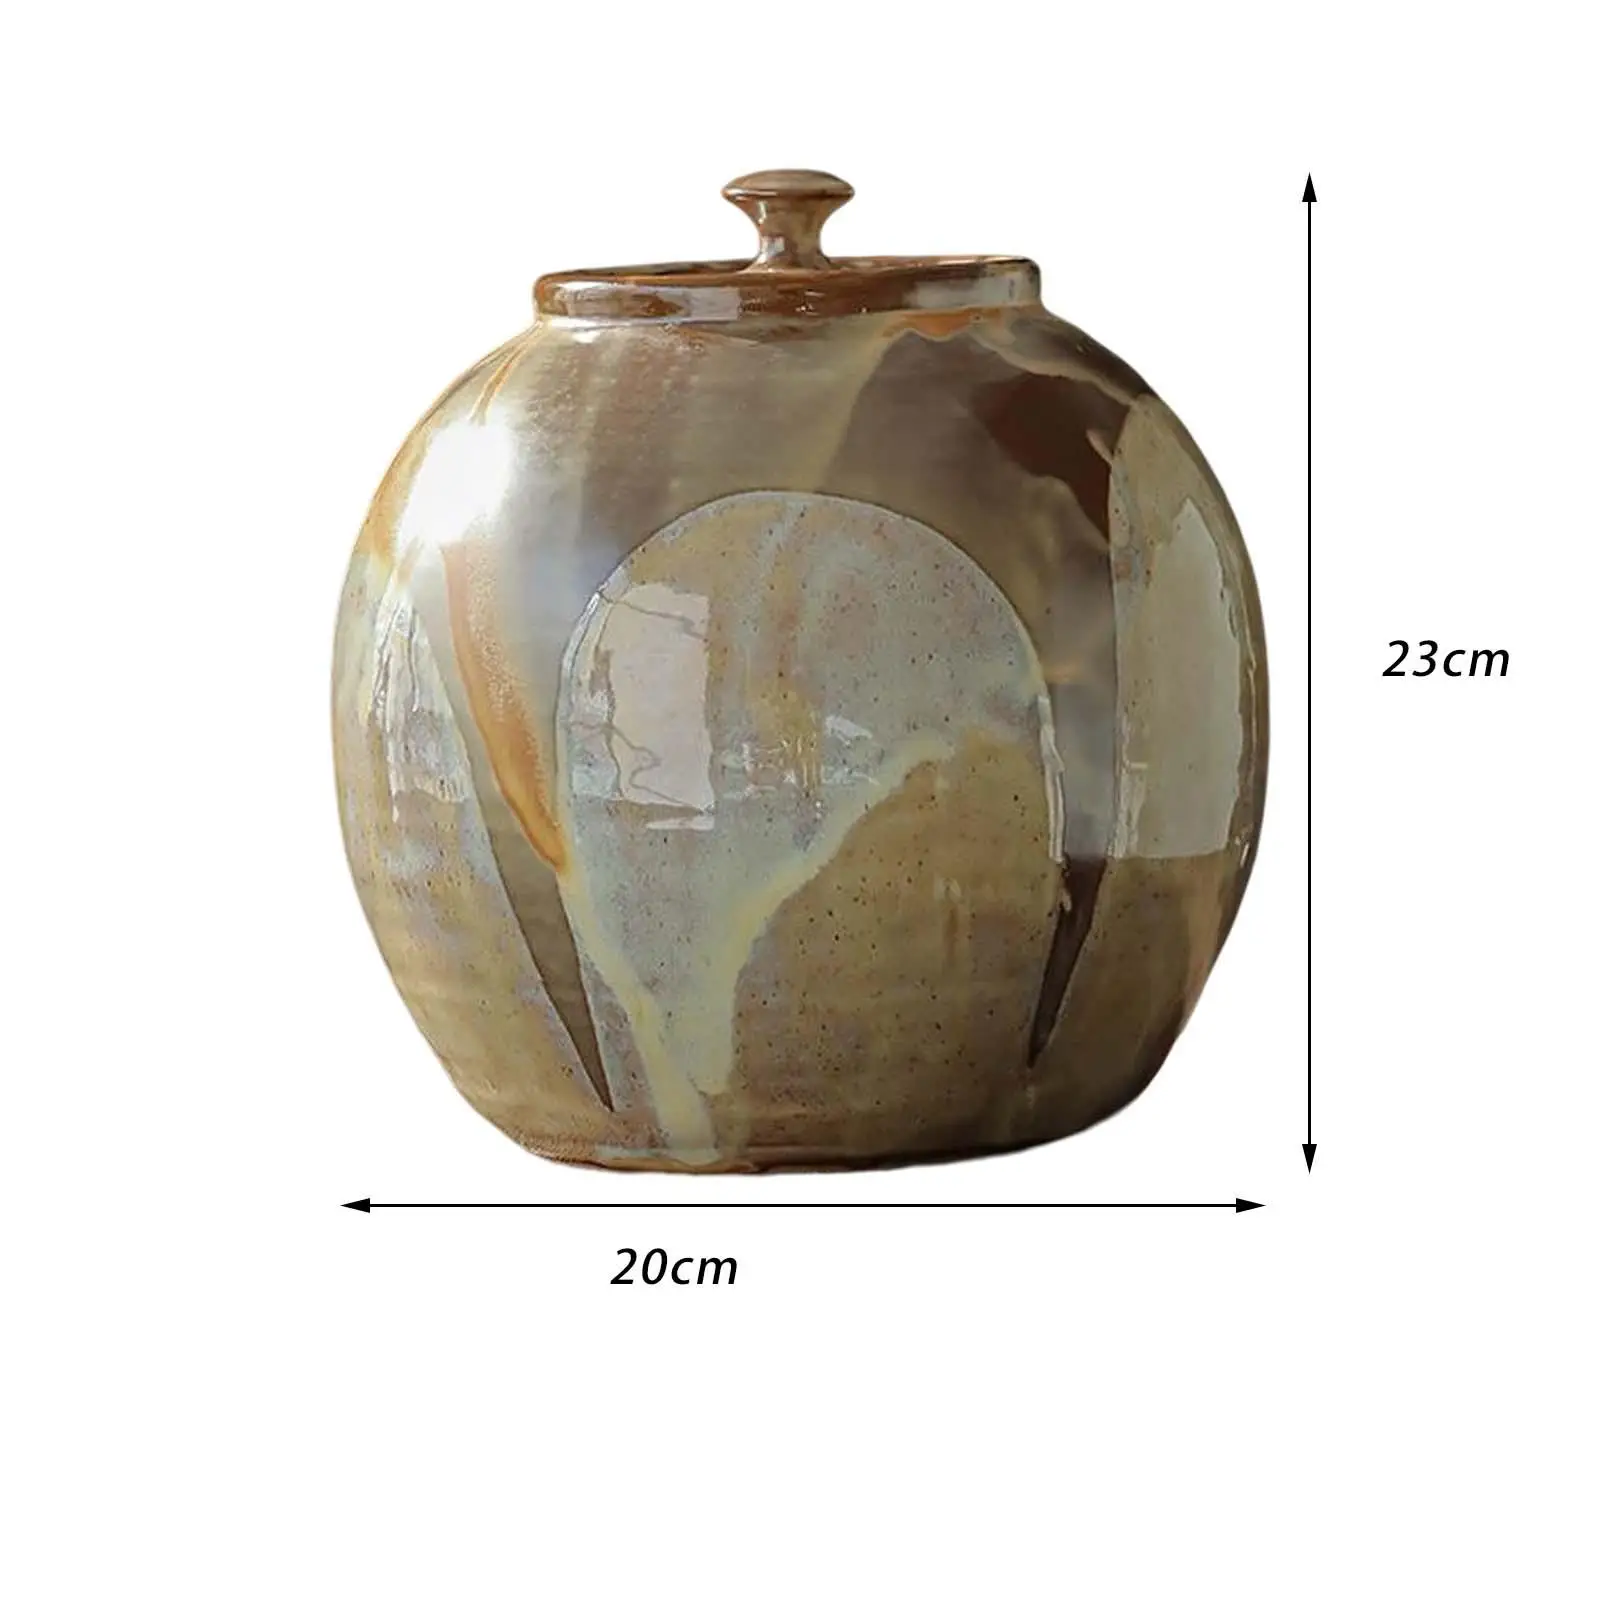 Porcelain Tea Jar Decorative Ceramic Flower Vase Food Storage Container Porcelain Jar with Lid for Tabletop Cabinet Gift Kitchen